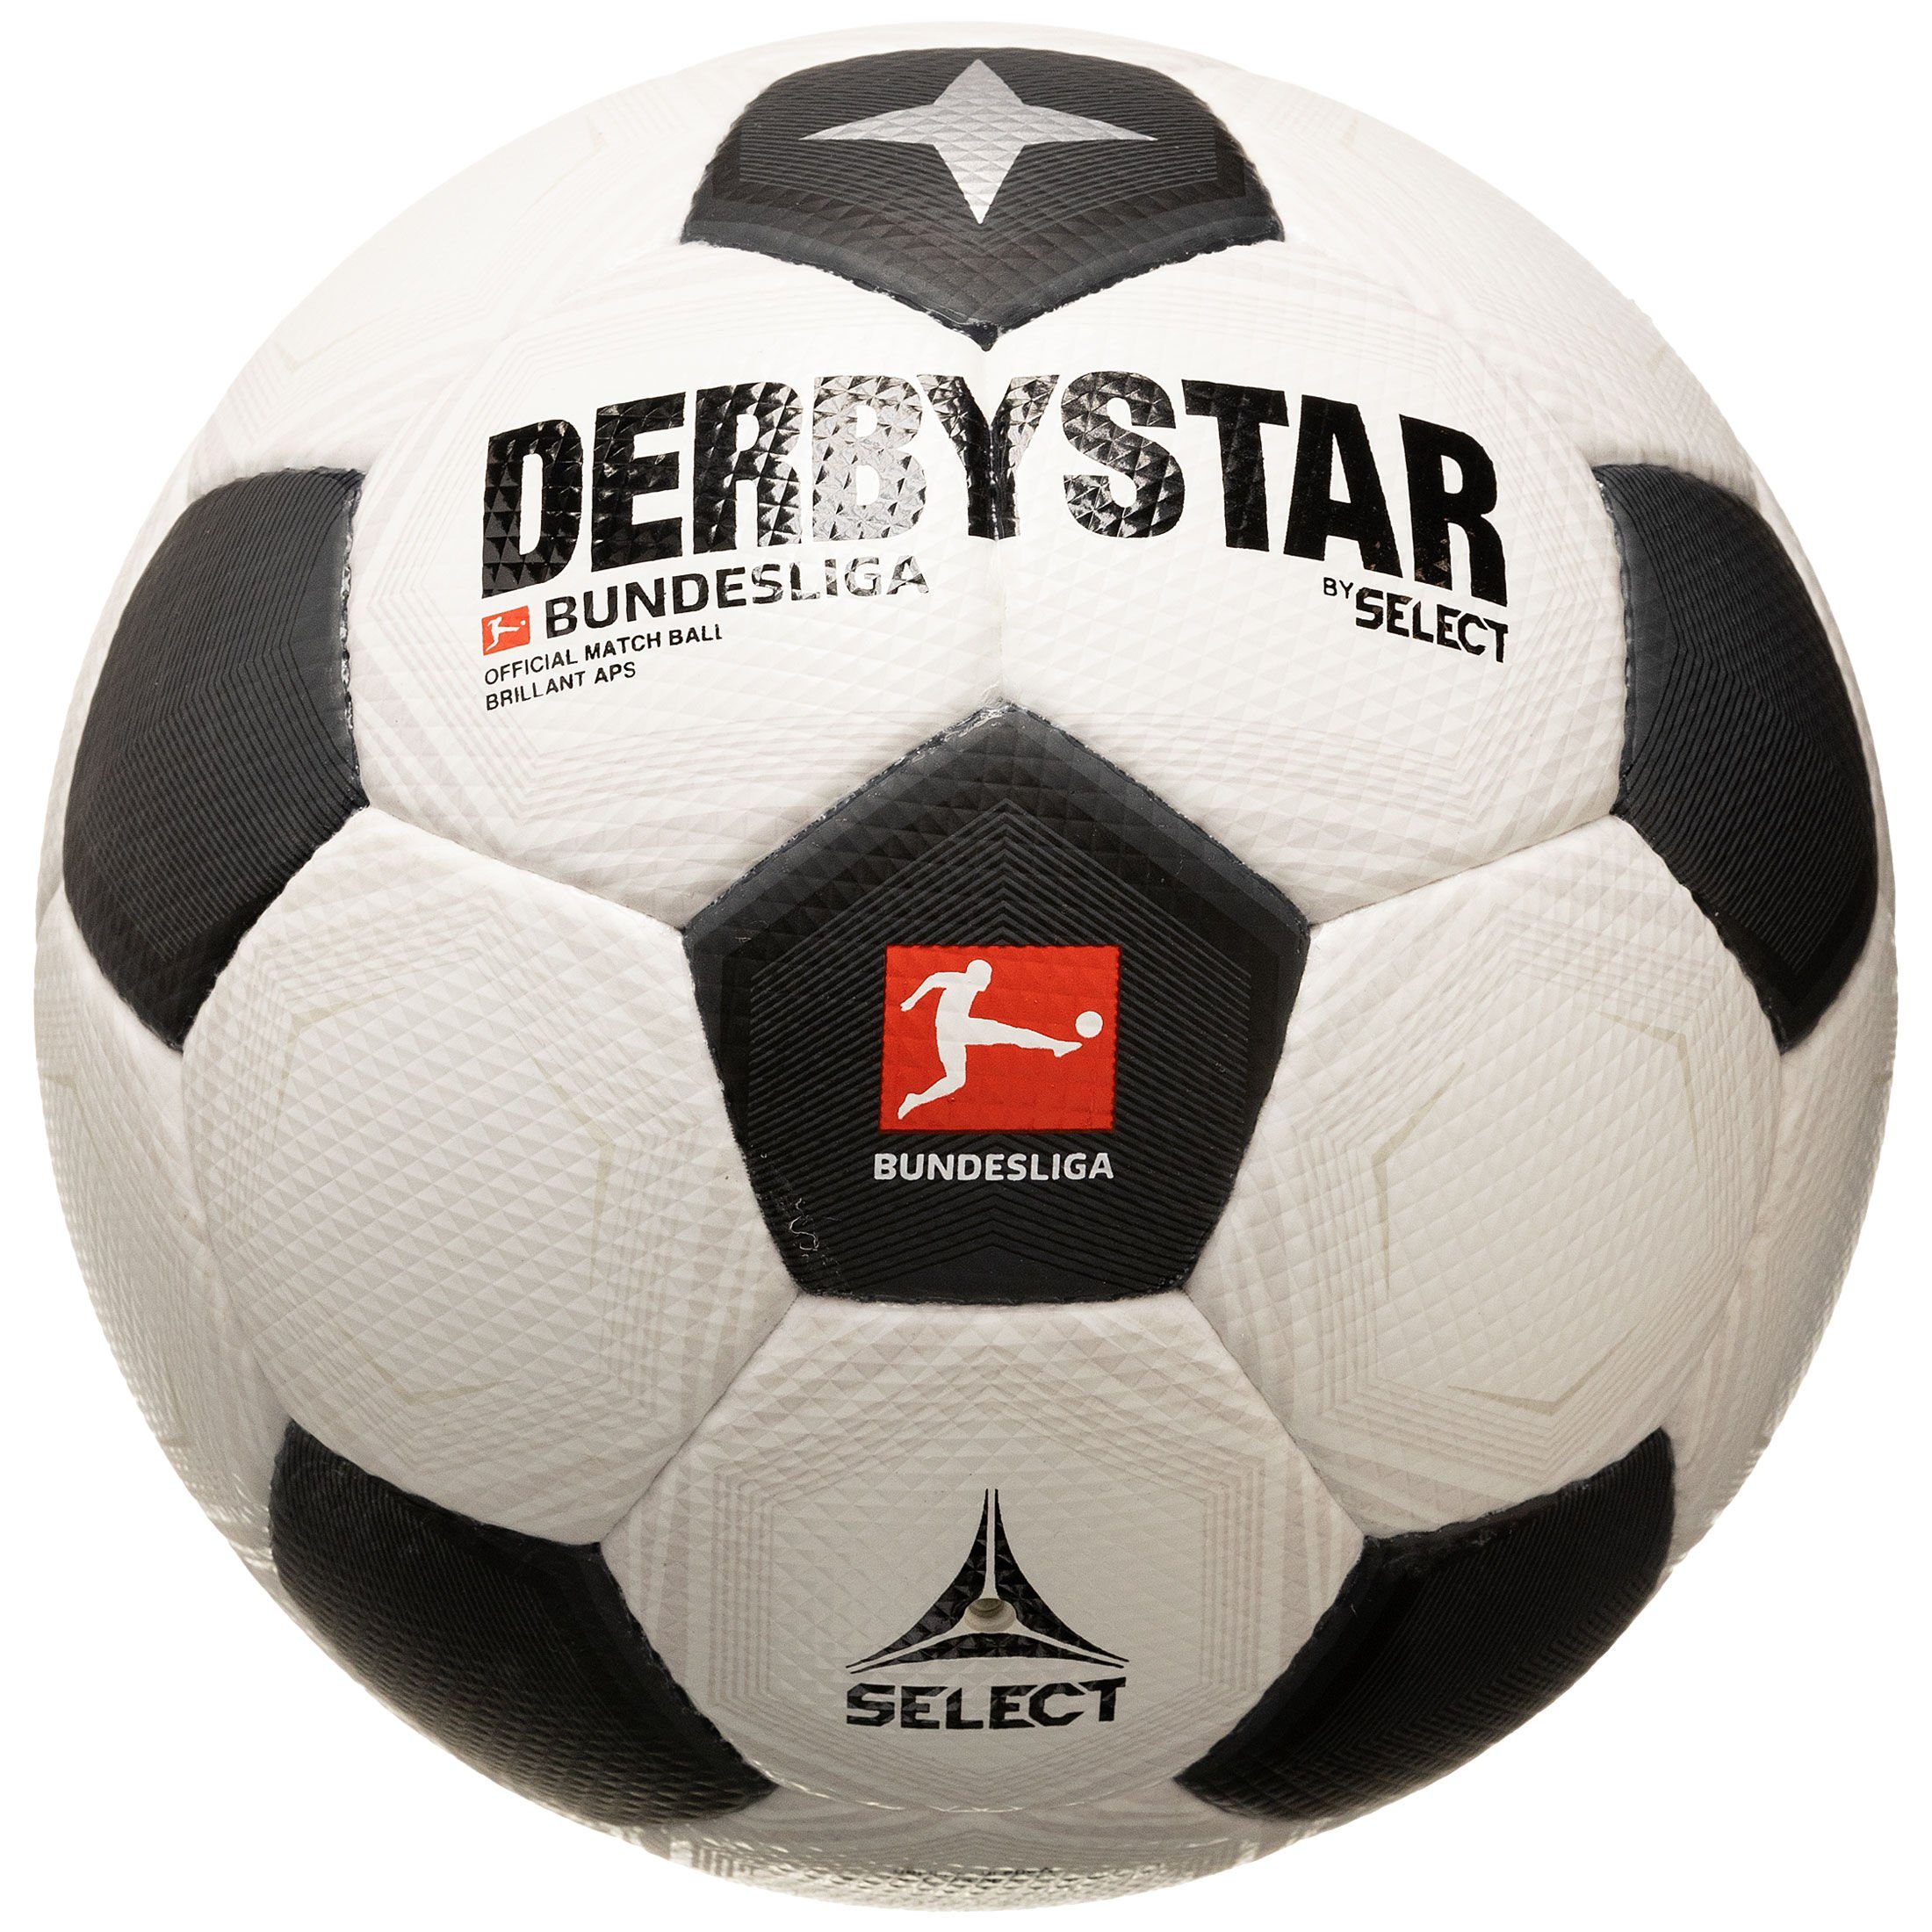 Derbystar Fußball Bundesliga Brillant Fußball v23 CLASSIC APS